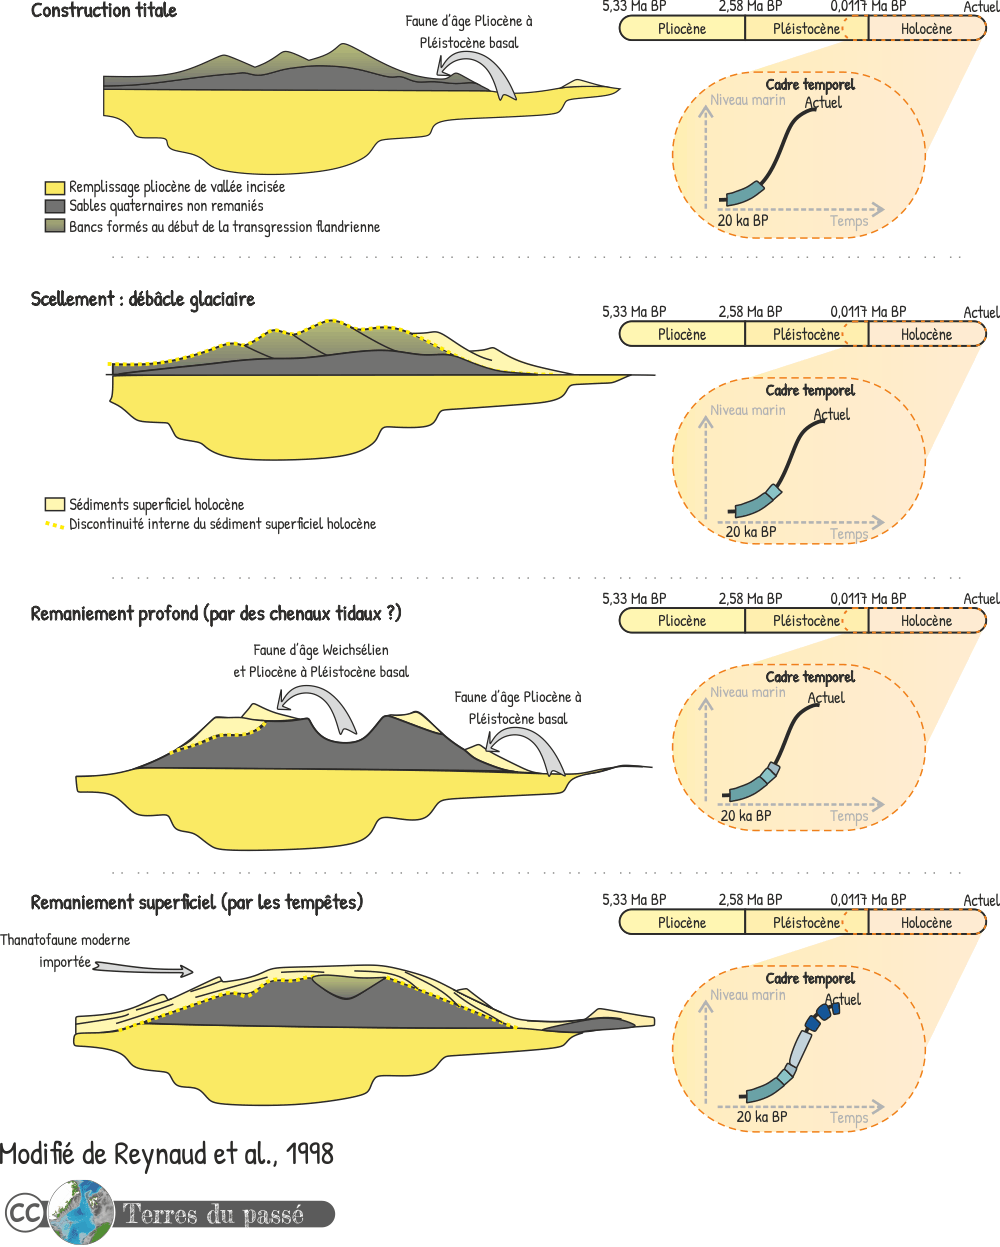 Formation des dunes celtiques et leur évolution au cours du temps depuis 20 ka BP, d'après Reynaud et al., 1998